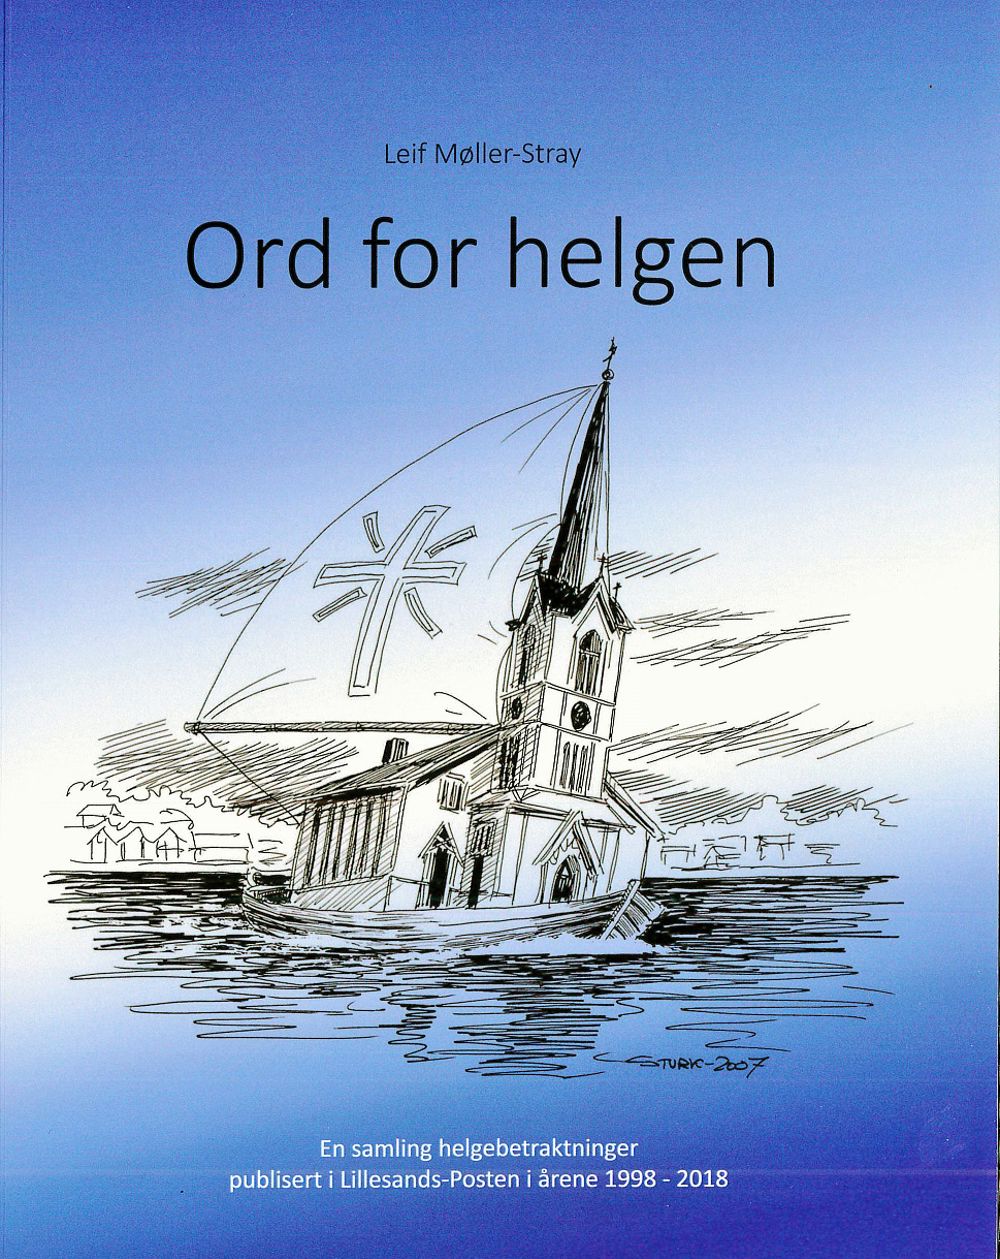 Boka til Leif Møller-Stray har fått tittelen "Ord for helgen".